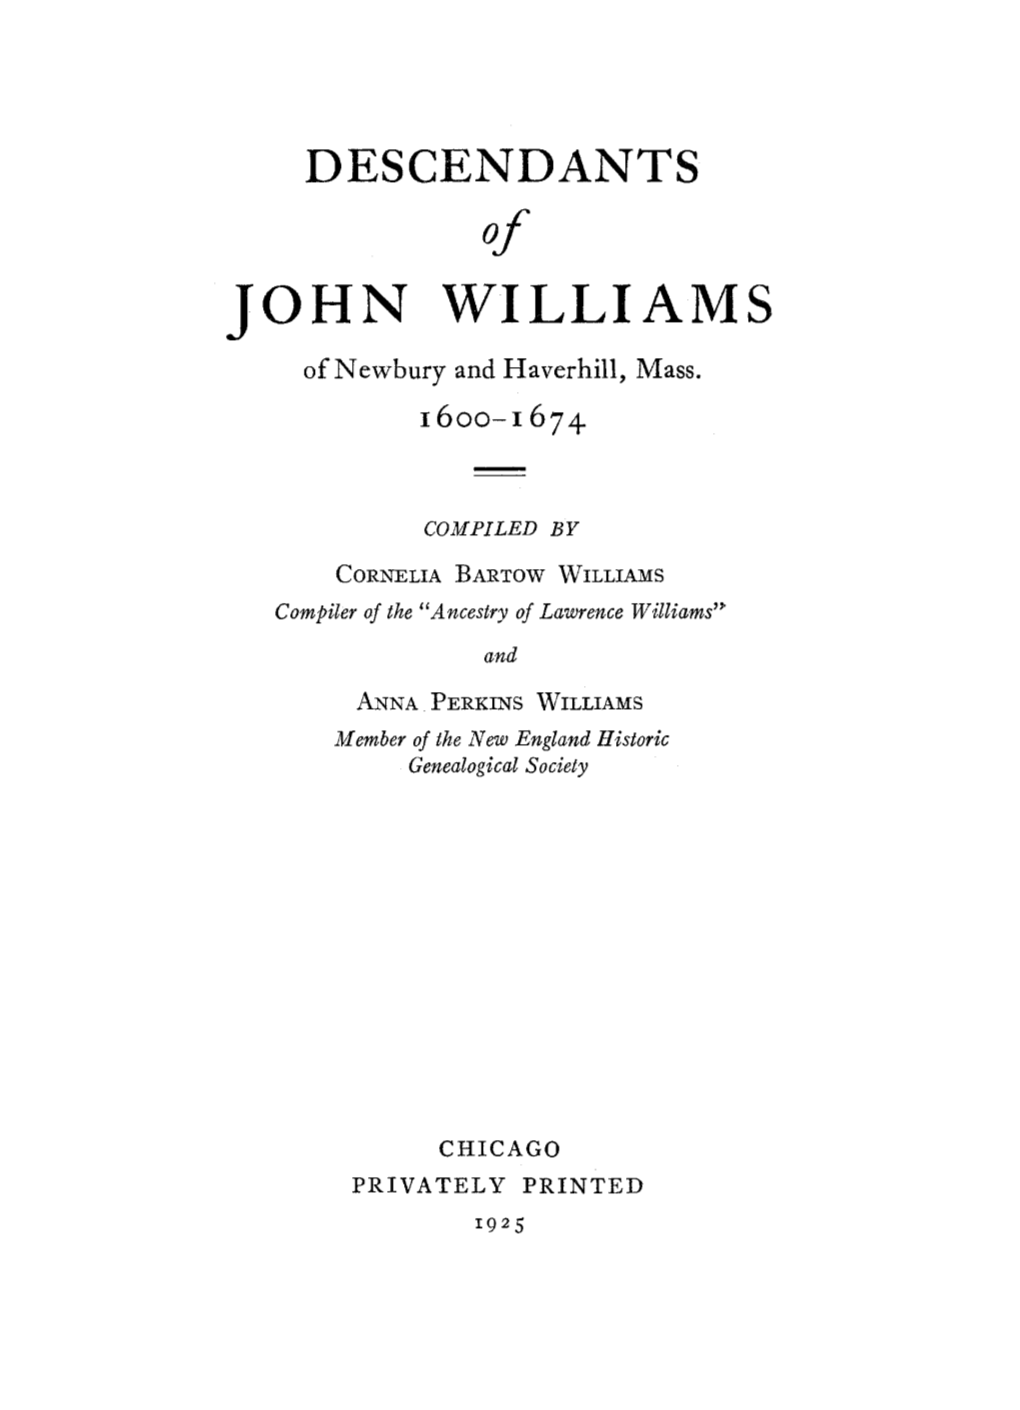 JOHN WILLIAMS of Newbury and Haverhill, Mass